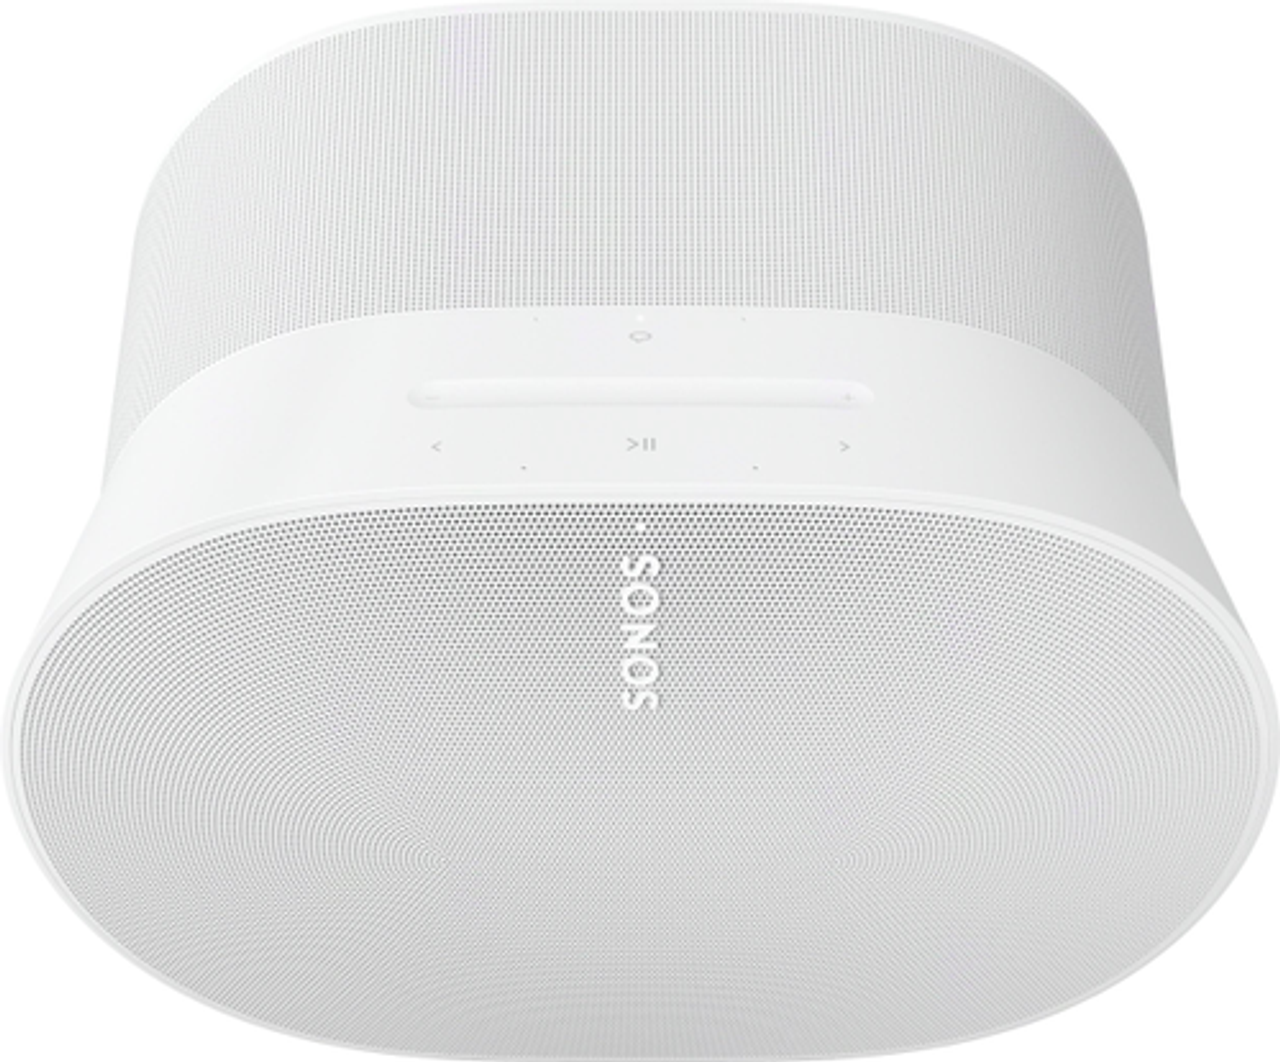 Sonos - Era 300 - White